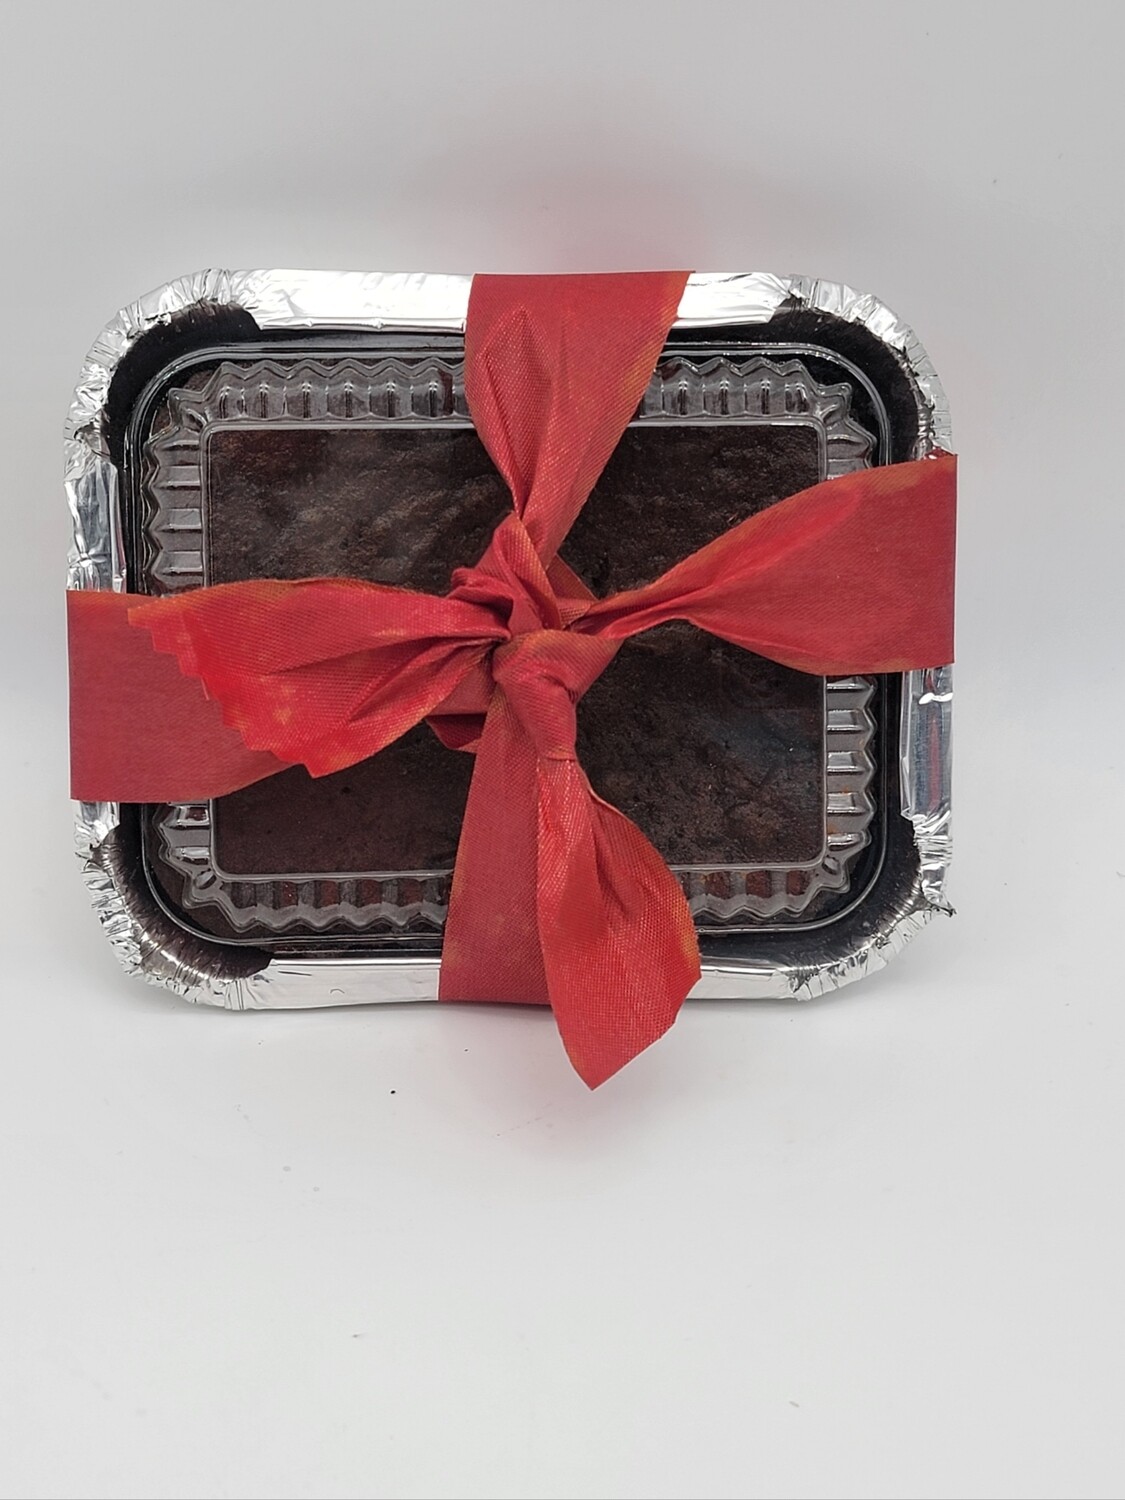 Bajan Christmas cake - 6 x 4 1/2